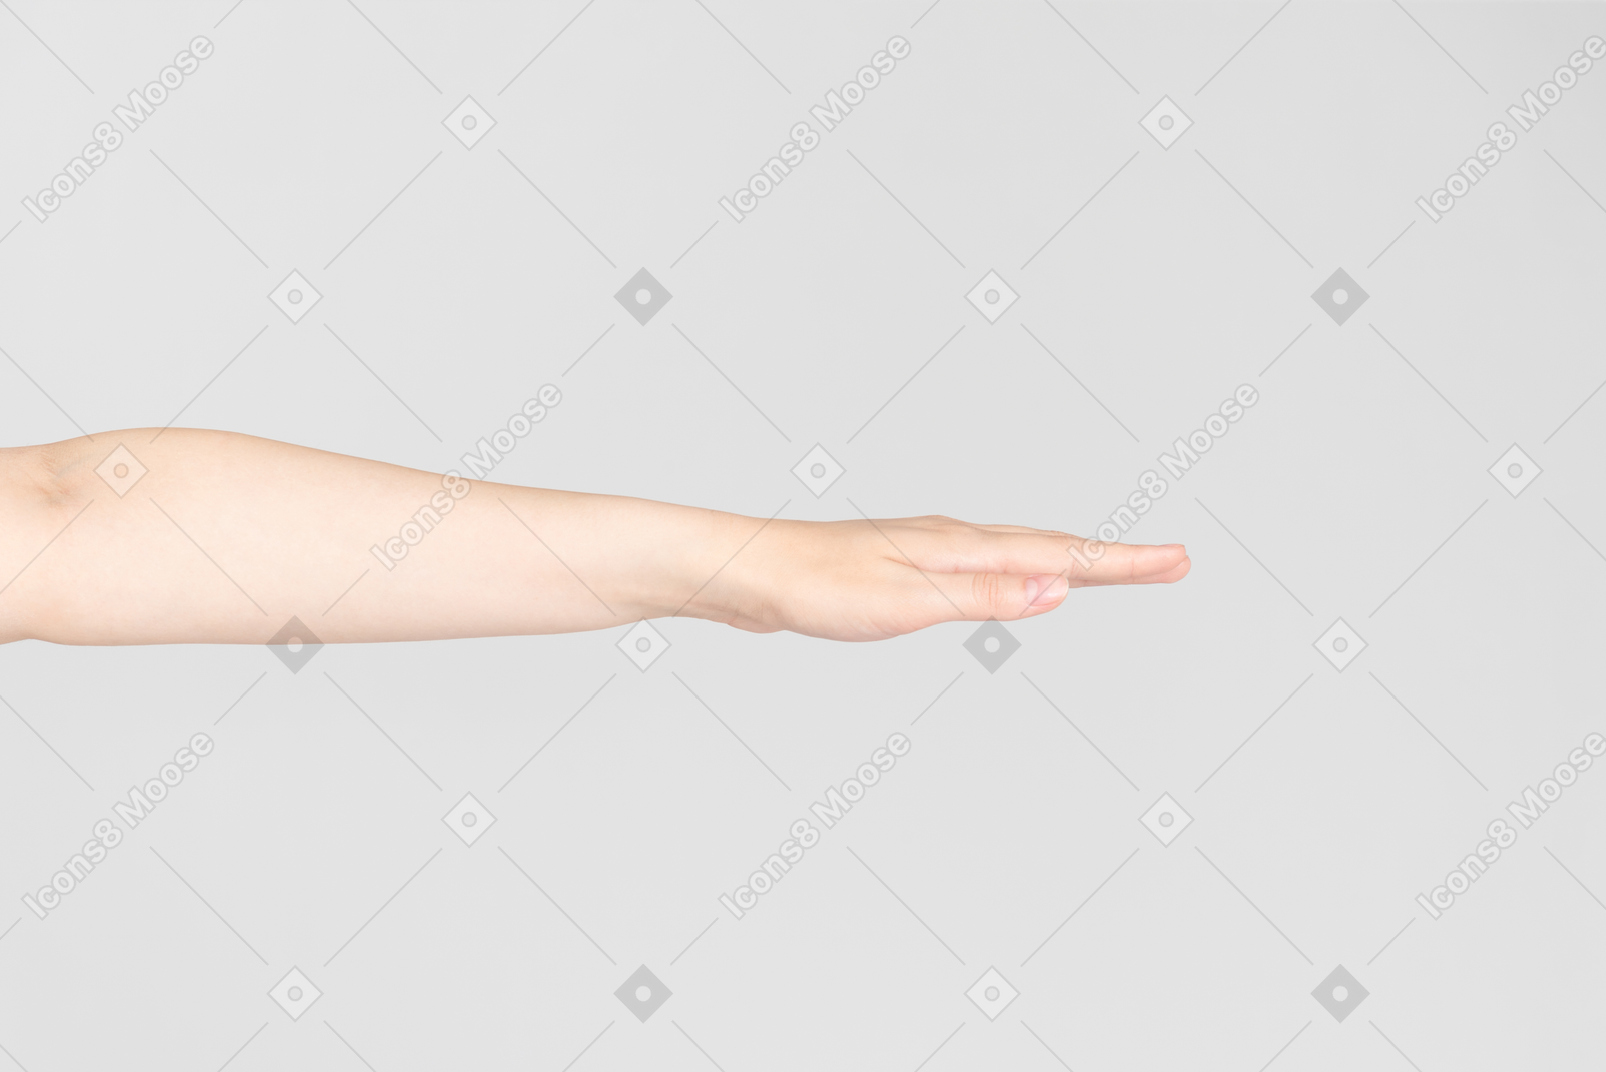 Sguardo laterale della mano femminile estesa